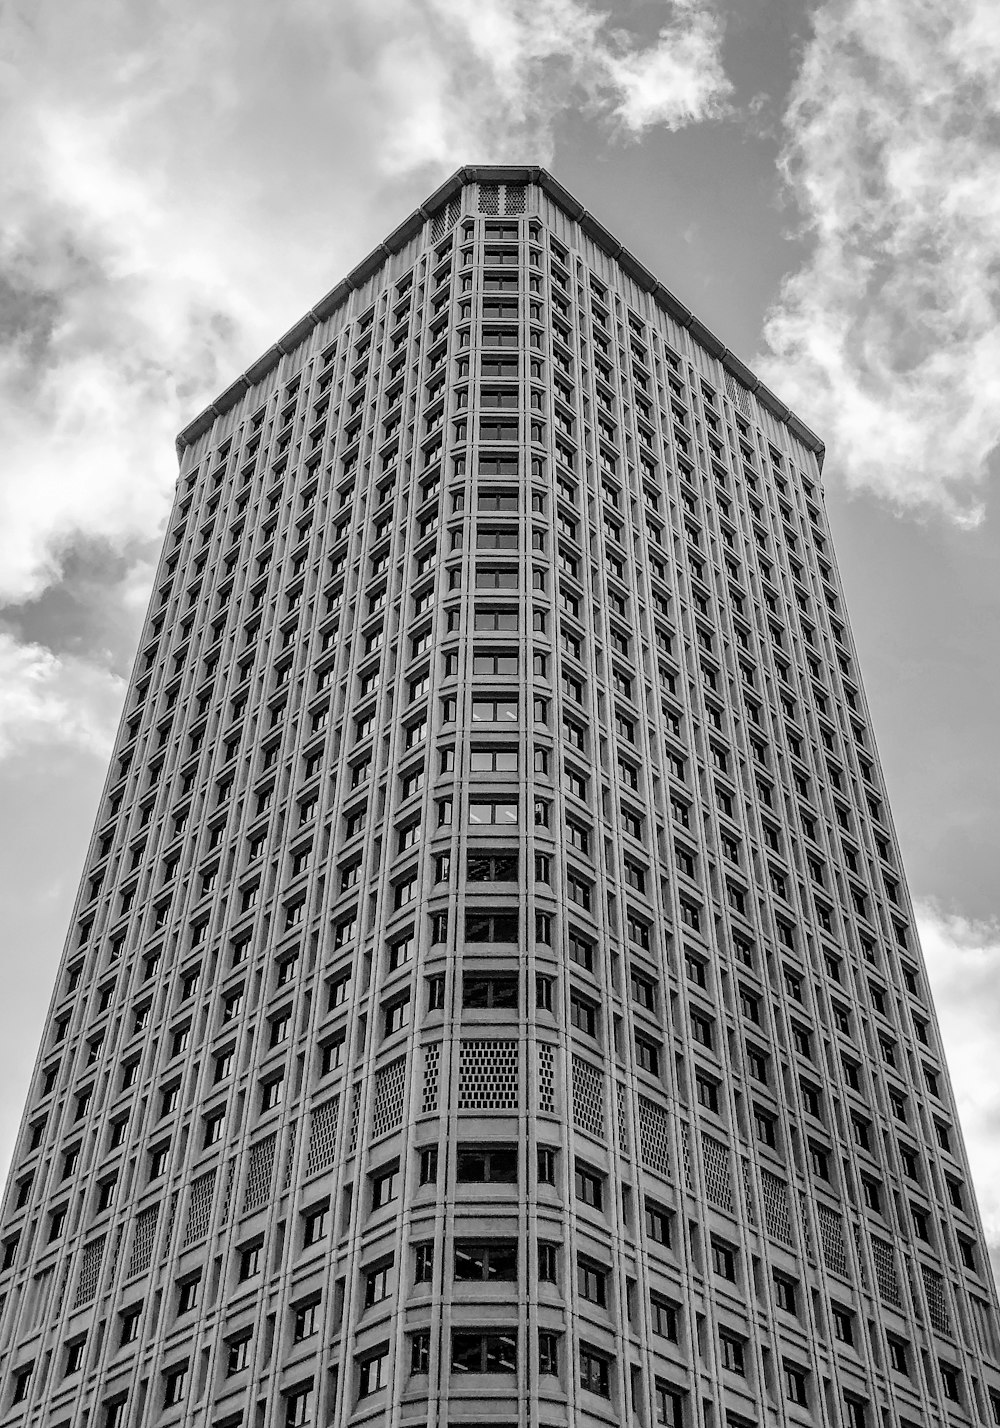 고층 건물의 그레이스케일 사진